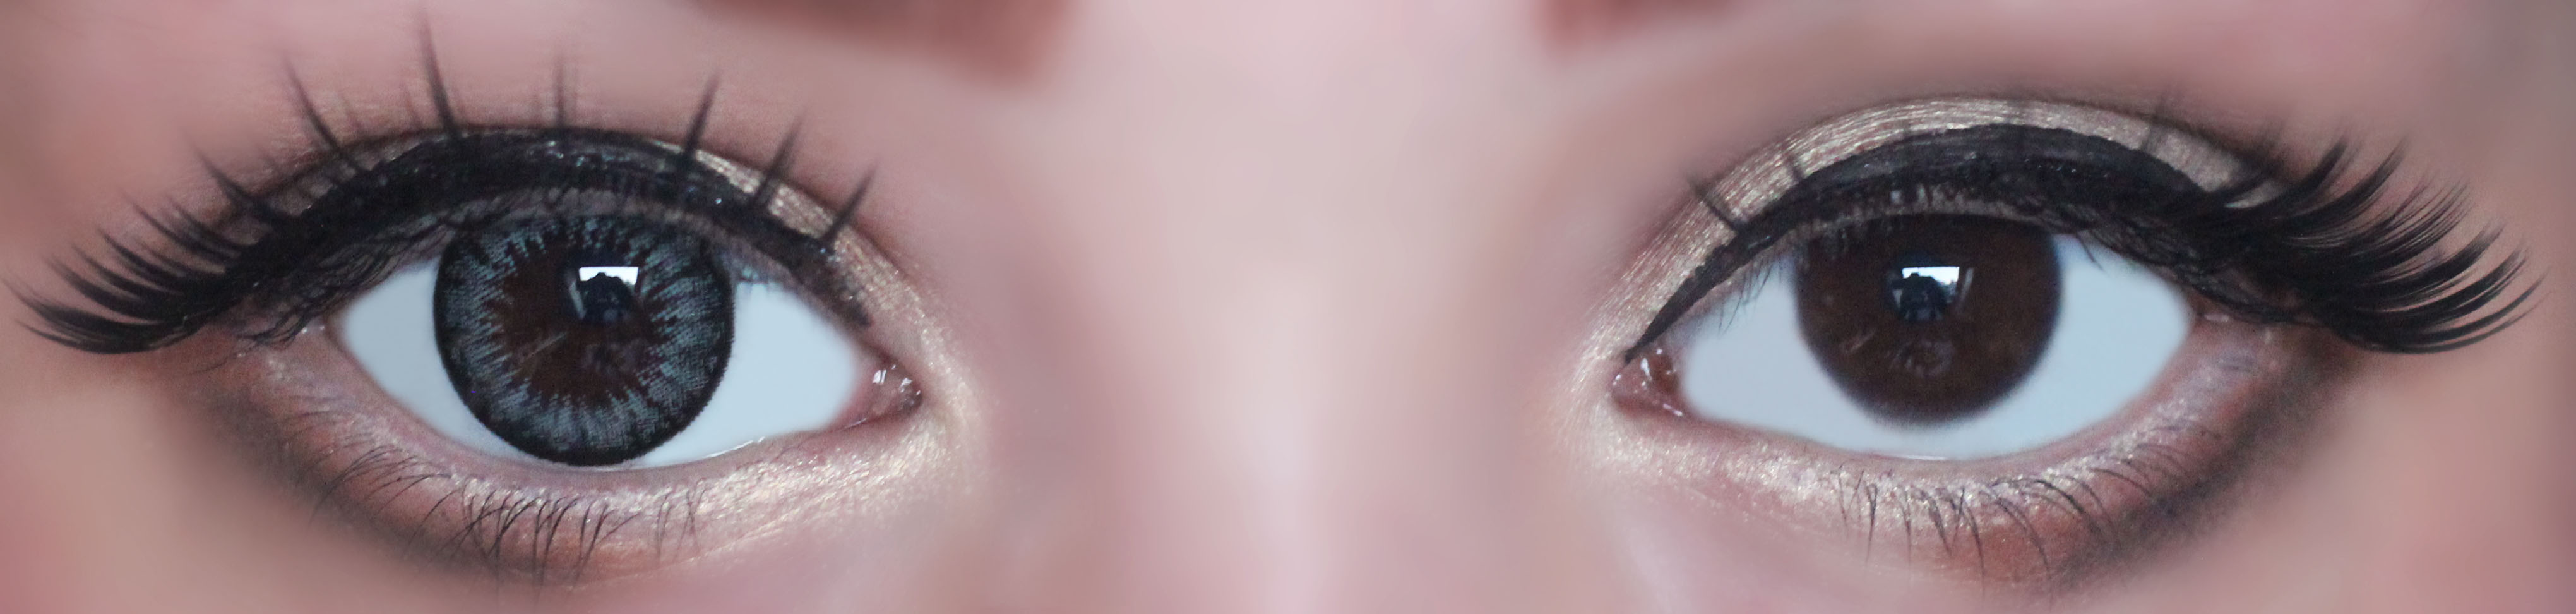 Черные линзы на карие глаза фото до и после